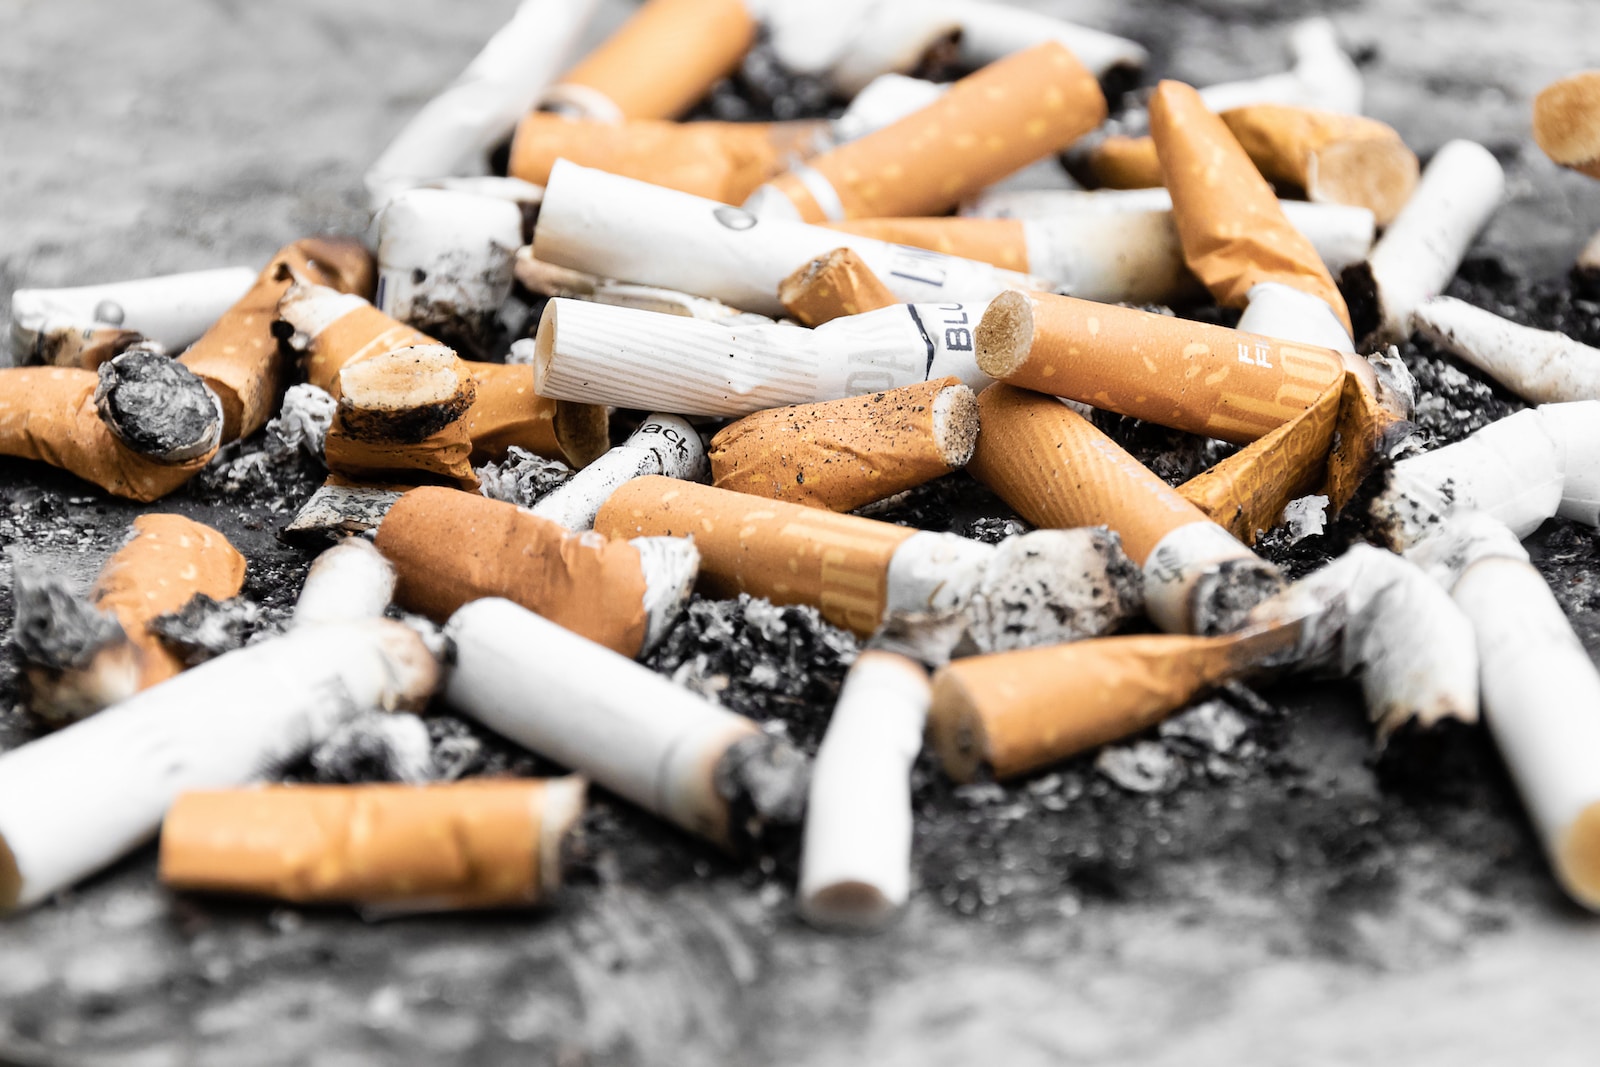 13 décembre 2022 : interdiction du tabac pour les personnes nées à partir de 2008 en Nouvelle-Zélande